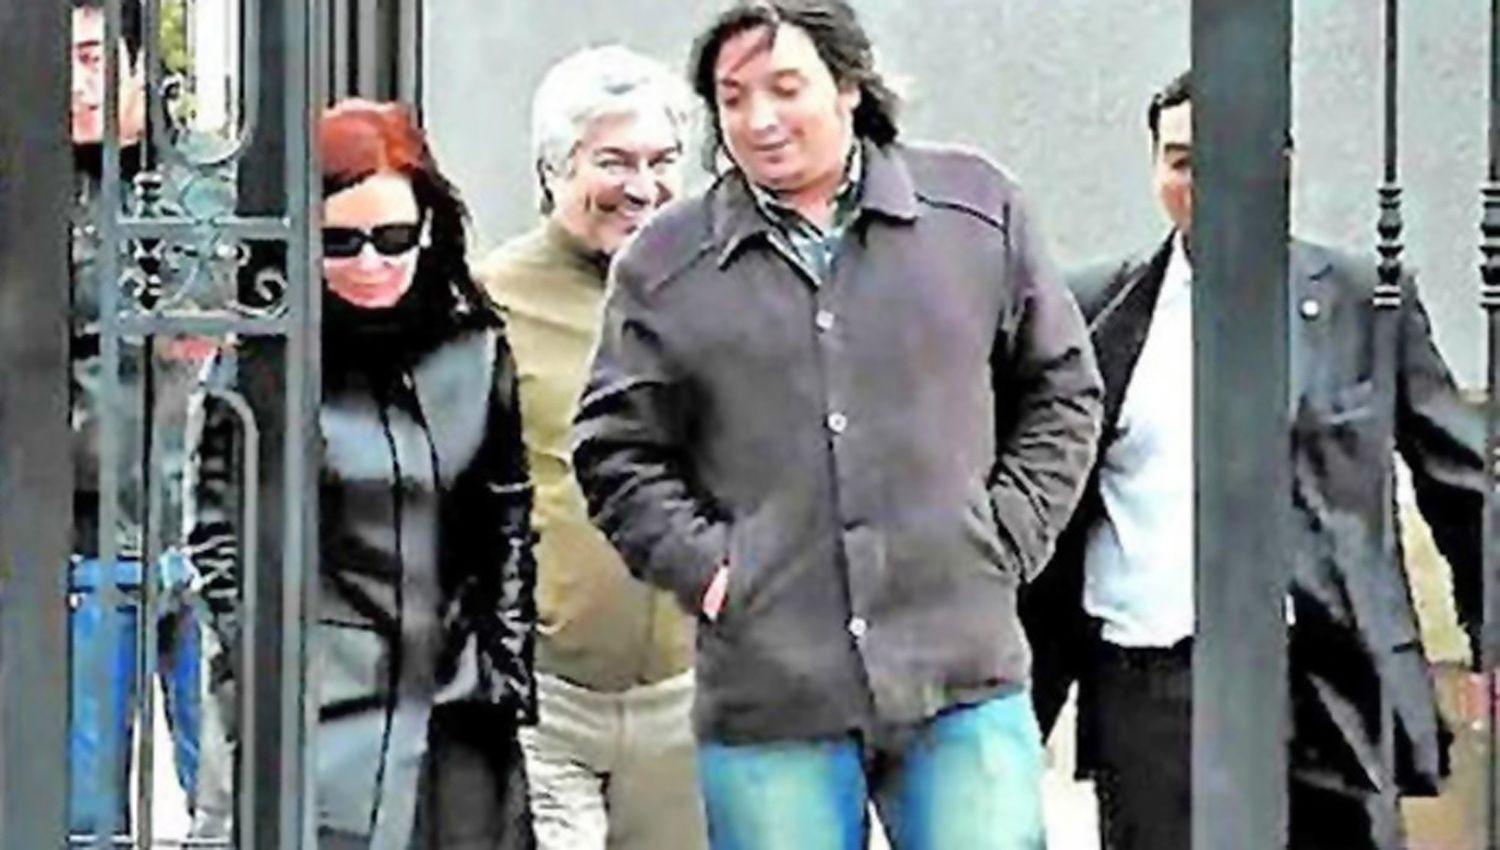 Juez profundiza investigacioacuten sobre nexos entre CFK y Baacuteez